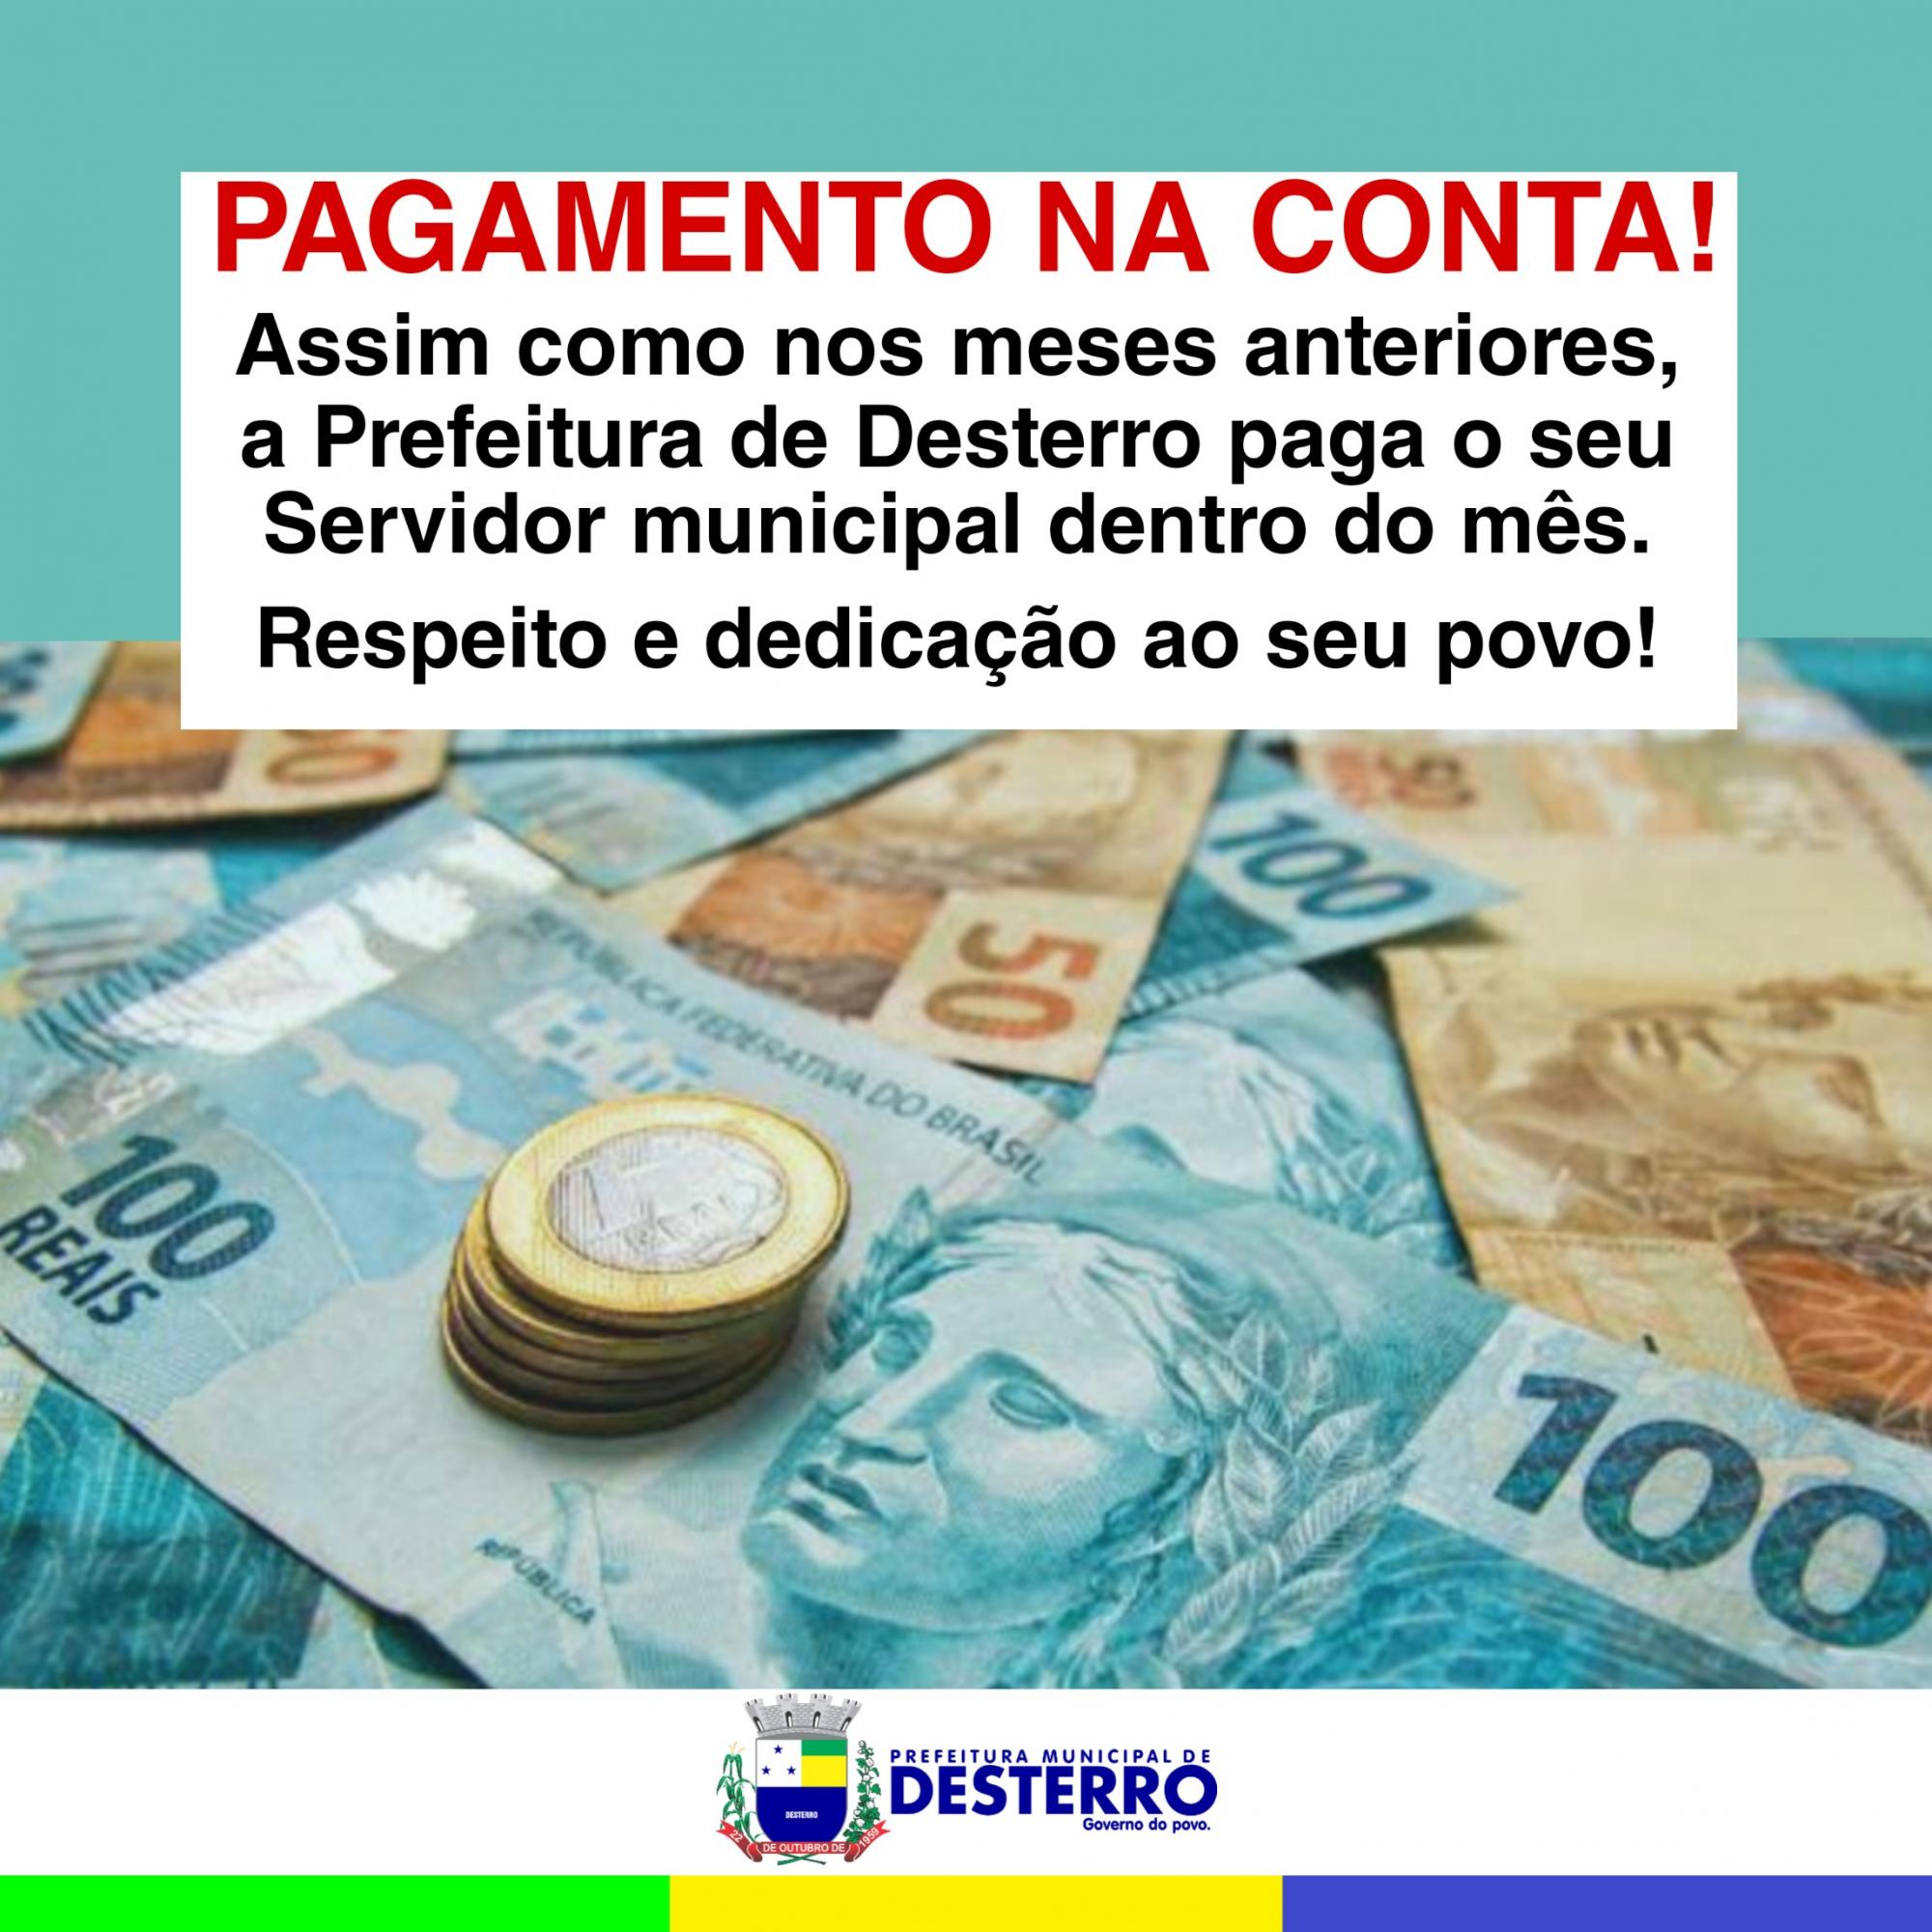 Prefeitura municipal de Desterro fecha folha de pagamento dentro do mês trabalhado!